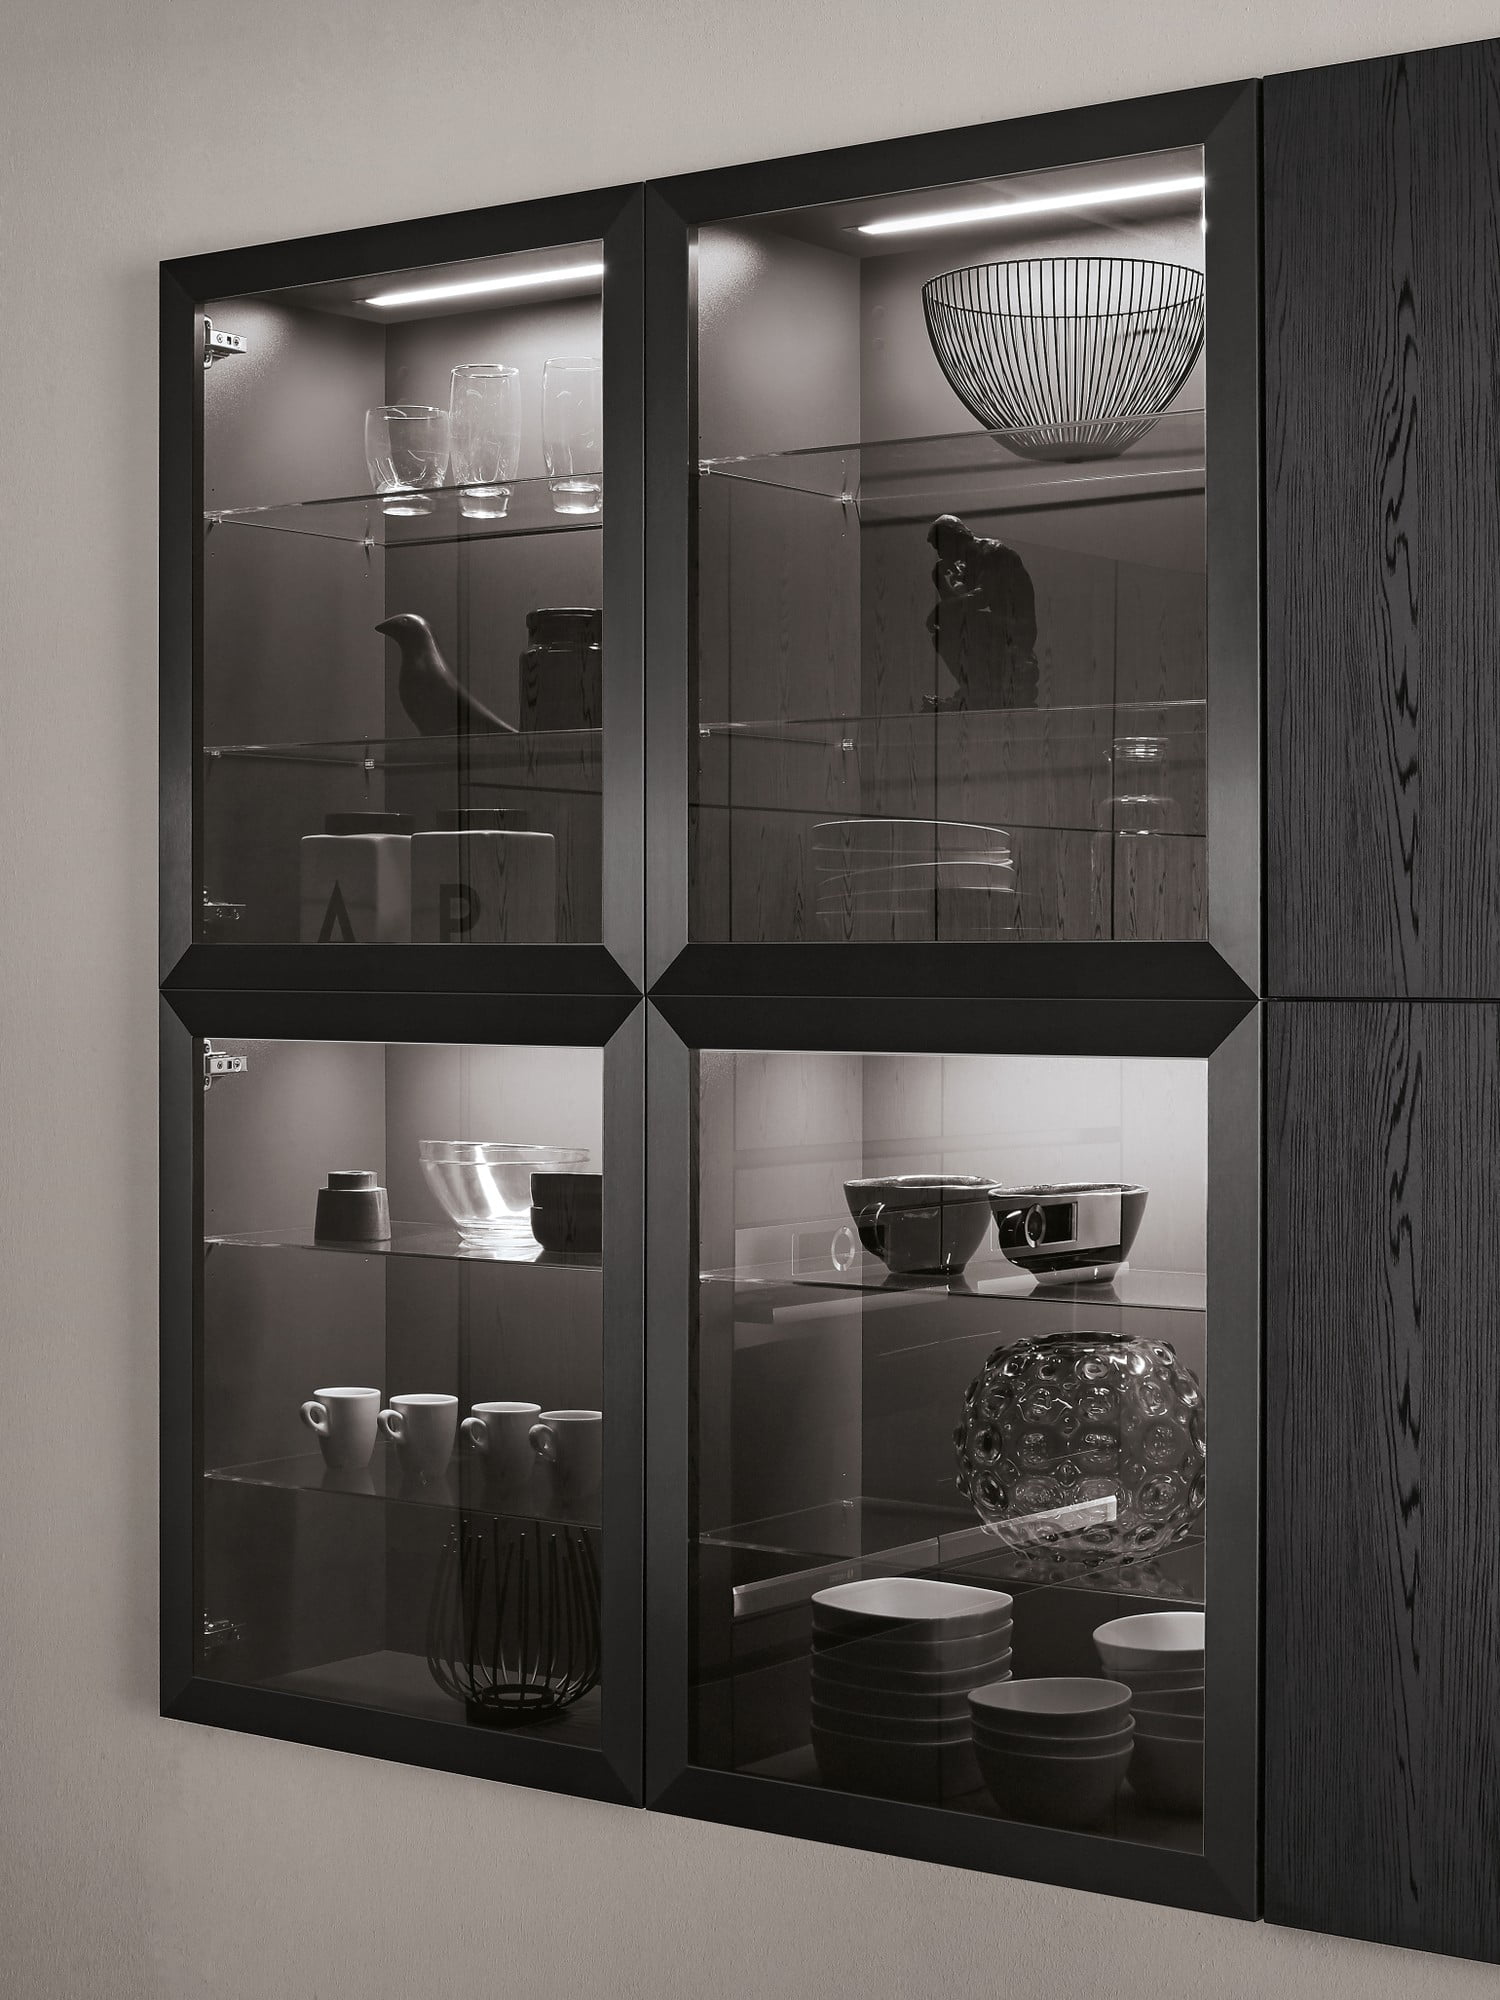 Vzdušnosti a prostoru v černé kuchyni docílíte prosklenými skříňkami nebo otevřenými policemi.